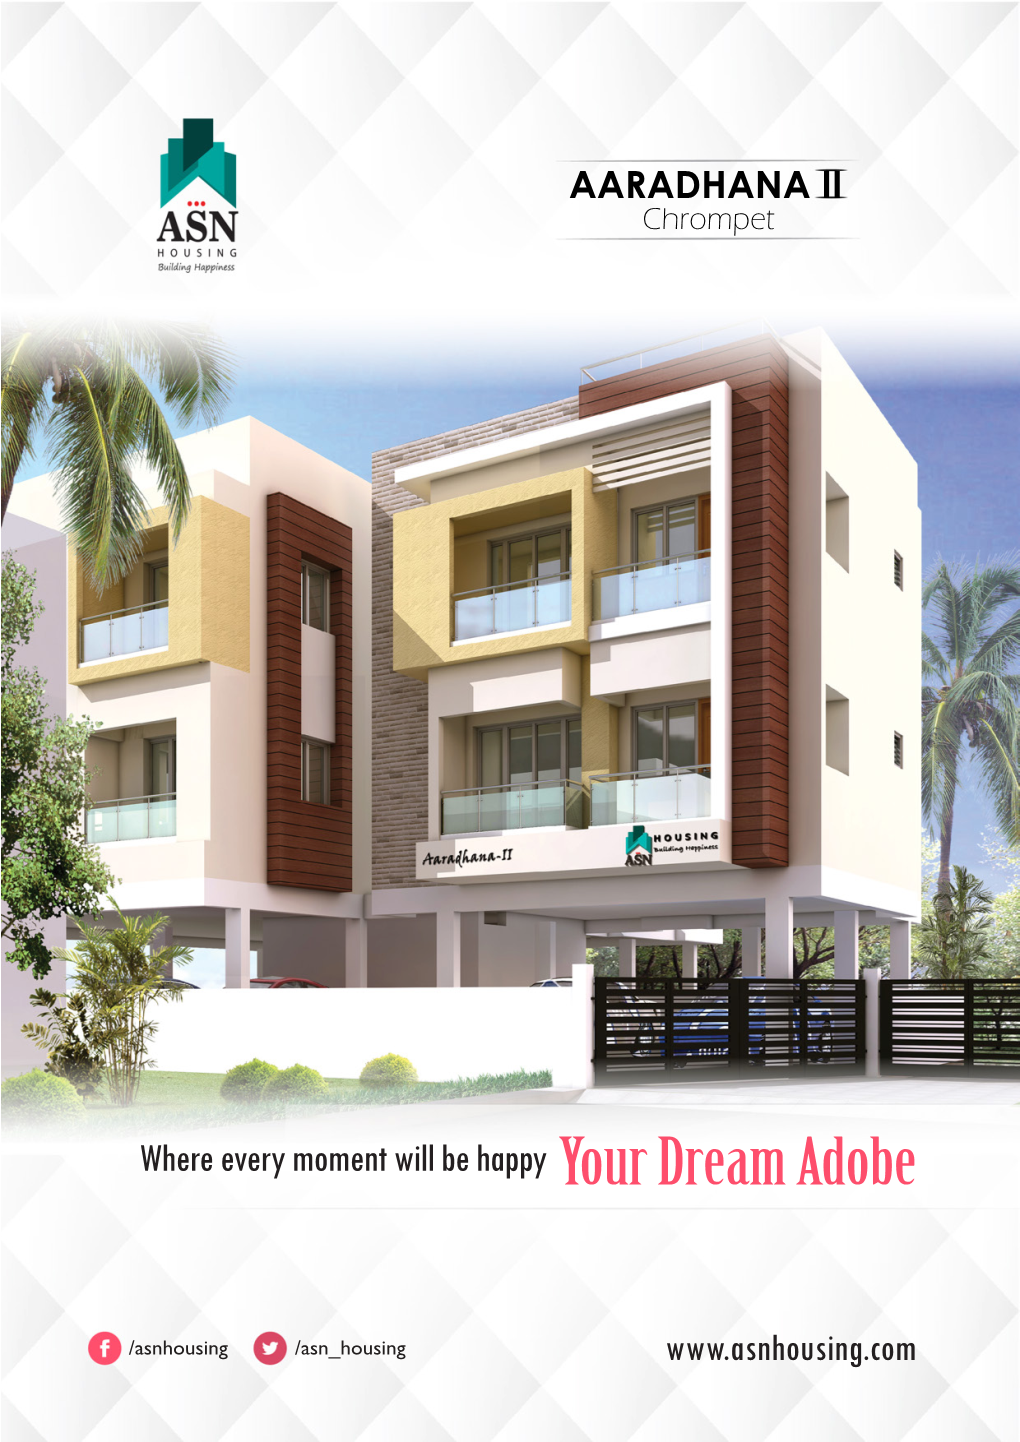 Your Dream Adobe